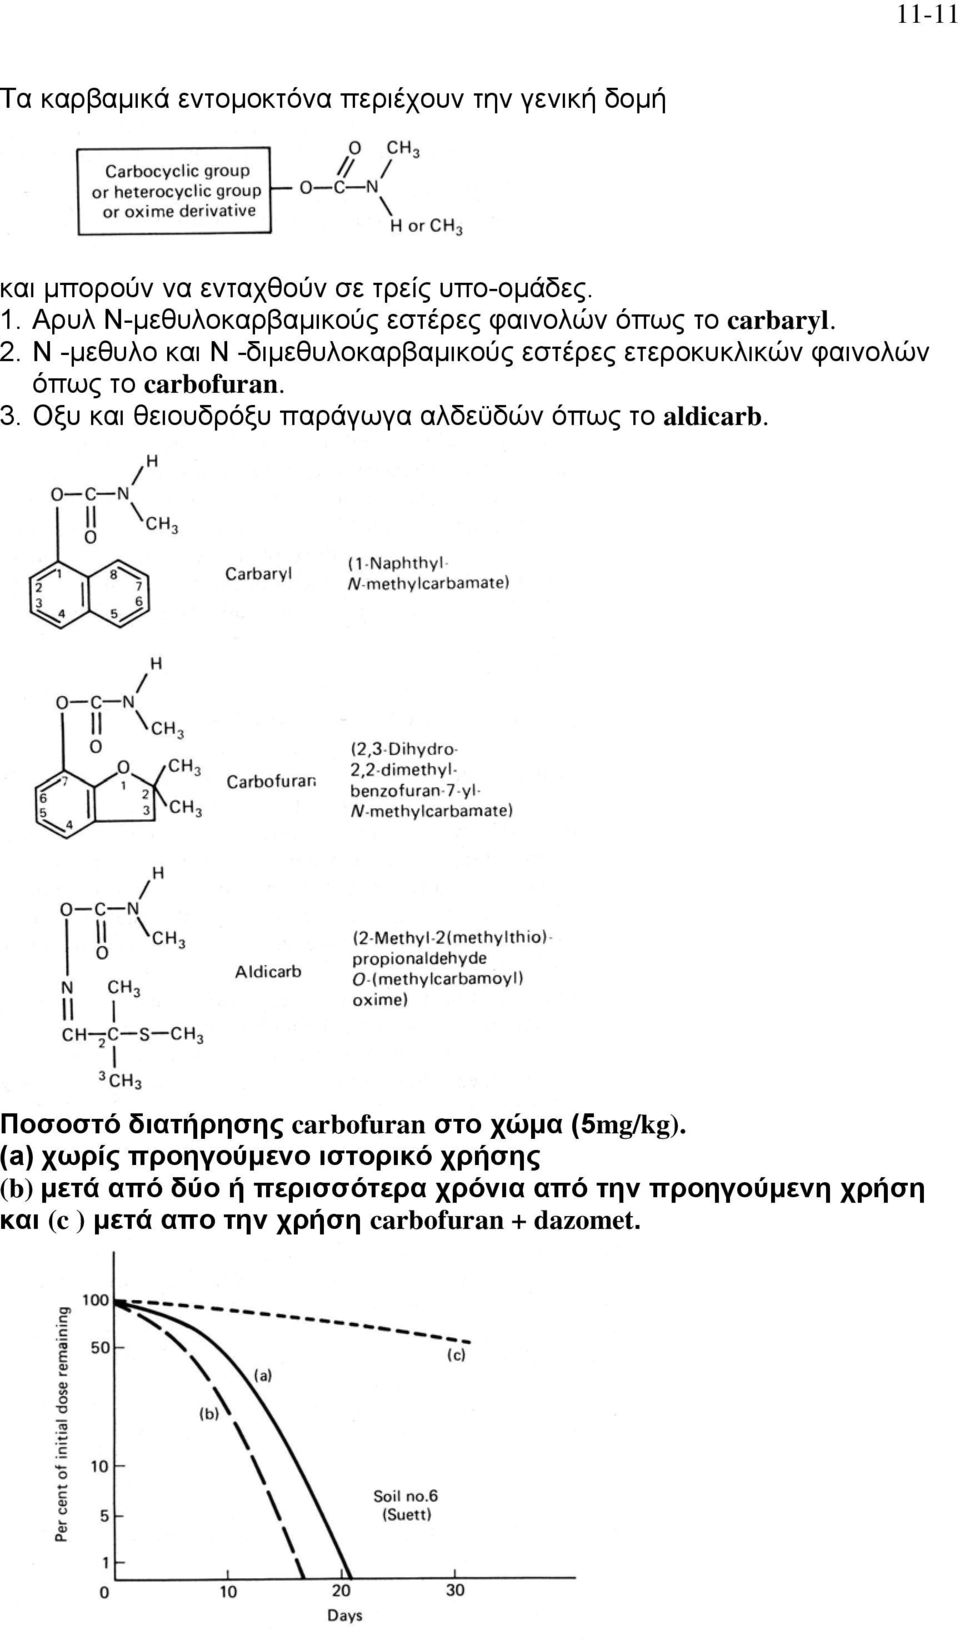 Ν -μεθυλο και Ν -διμεθυλοκαρβαμικούς εστέρες ετεροκυκλικών φαινολών όπως το carbofuran. 3.